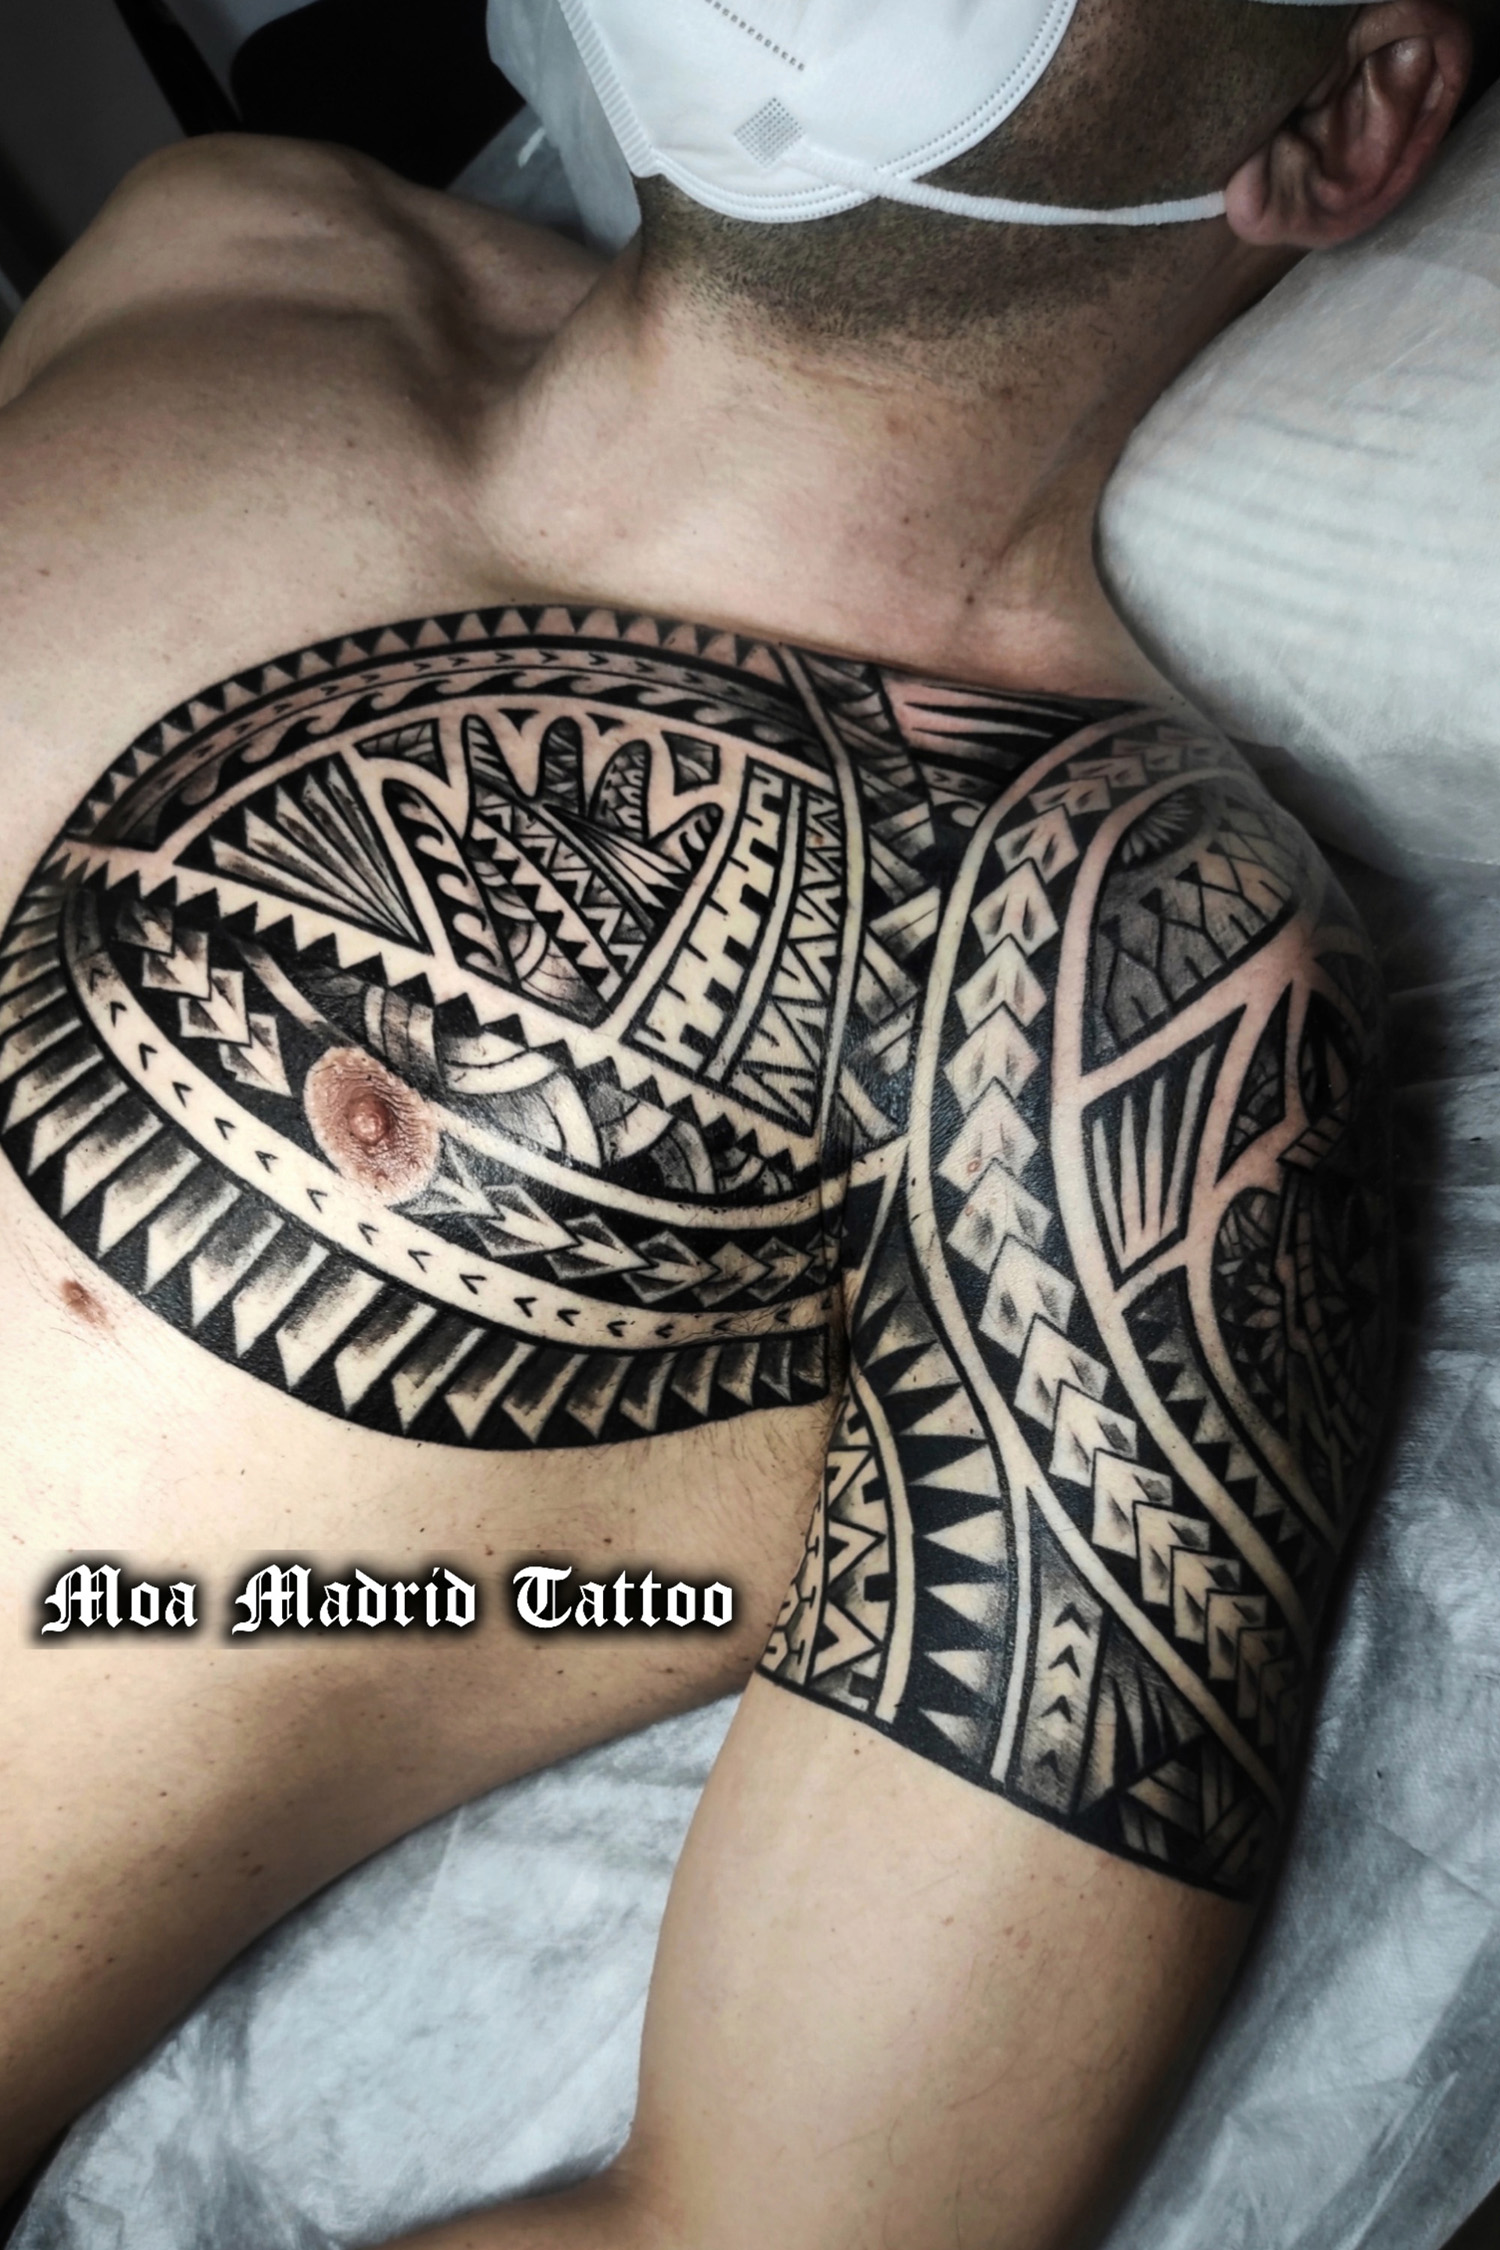 Nuevo tatuaje maorí en el pectoral, siguiendo el estilo de su anterior tattoo en el brazo